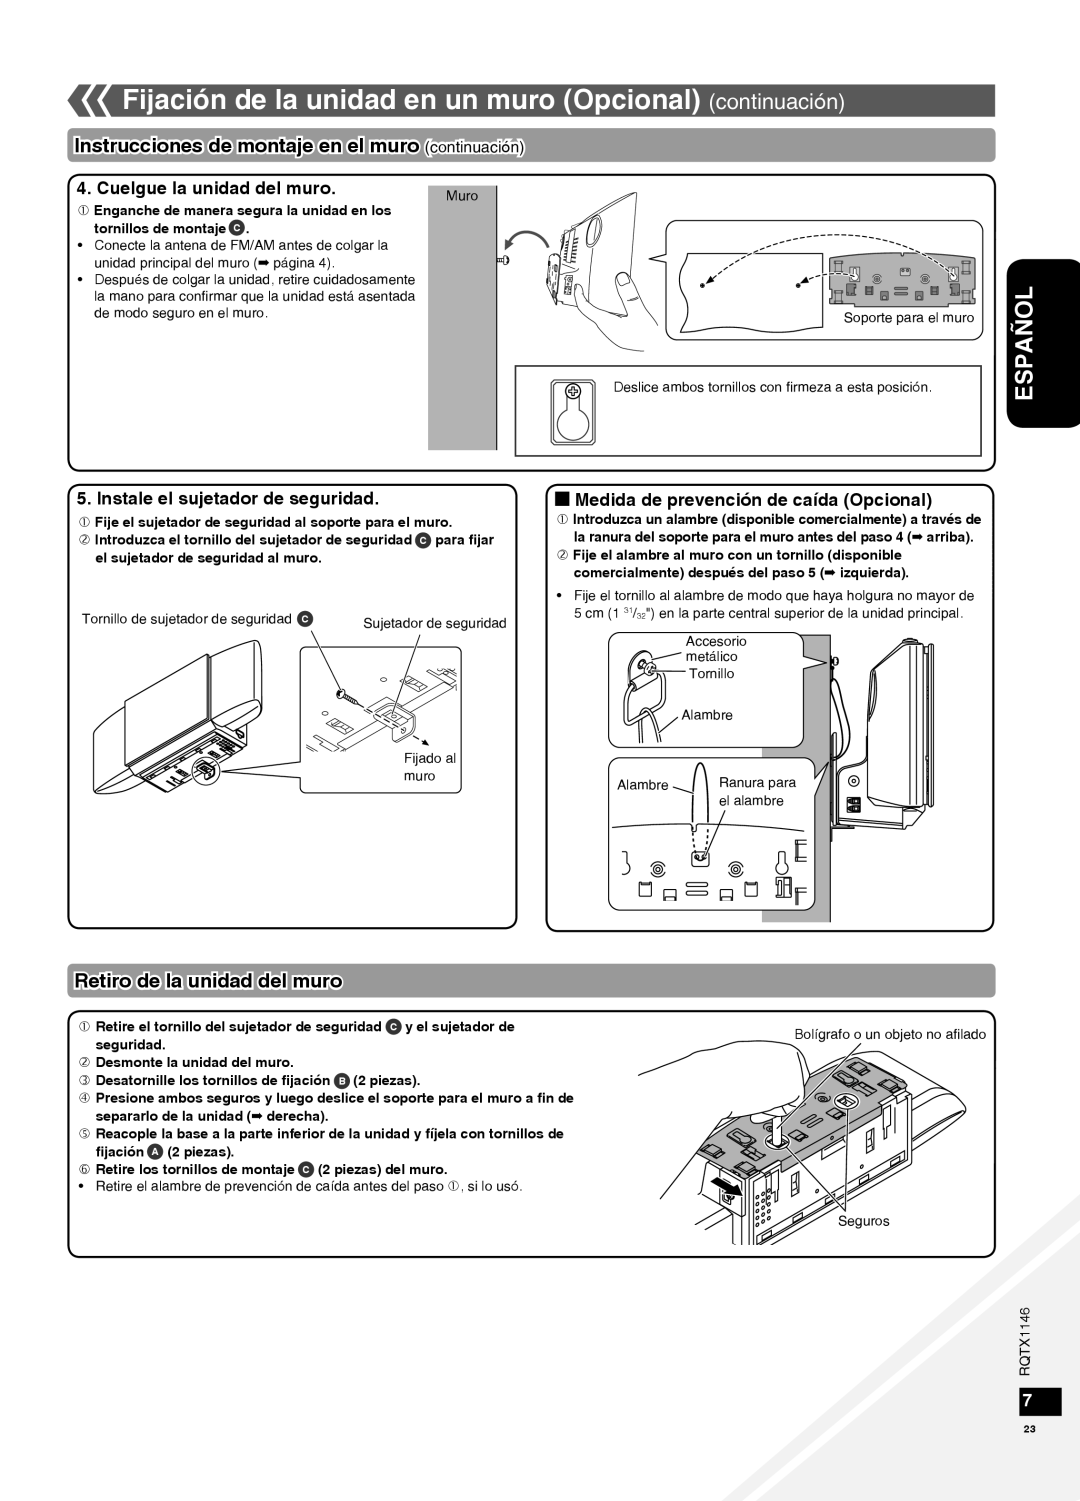 Panasonic SC-HC40 warranty Instrucciones de montaje en el muro continuación, Retiro de la unidad del muro, Español 